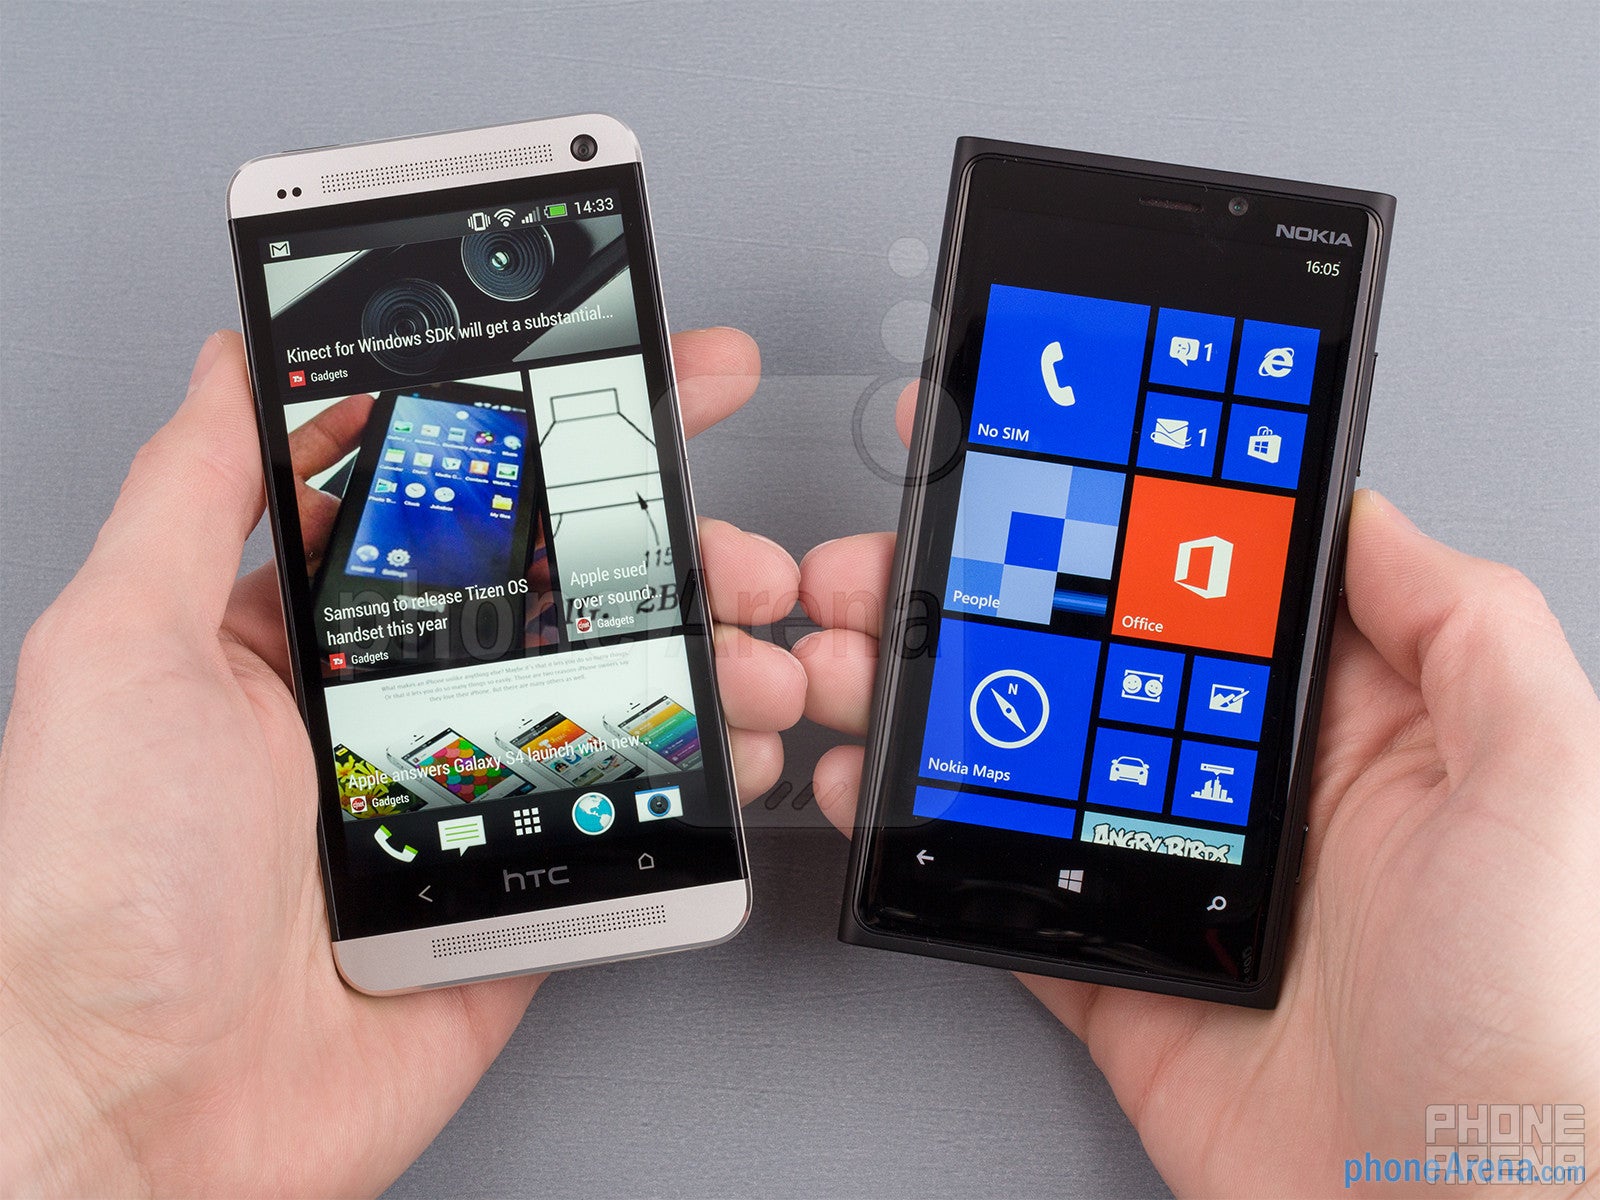 HTC One vs Nokia Lumia 920